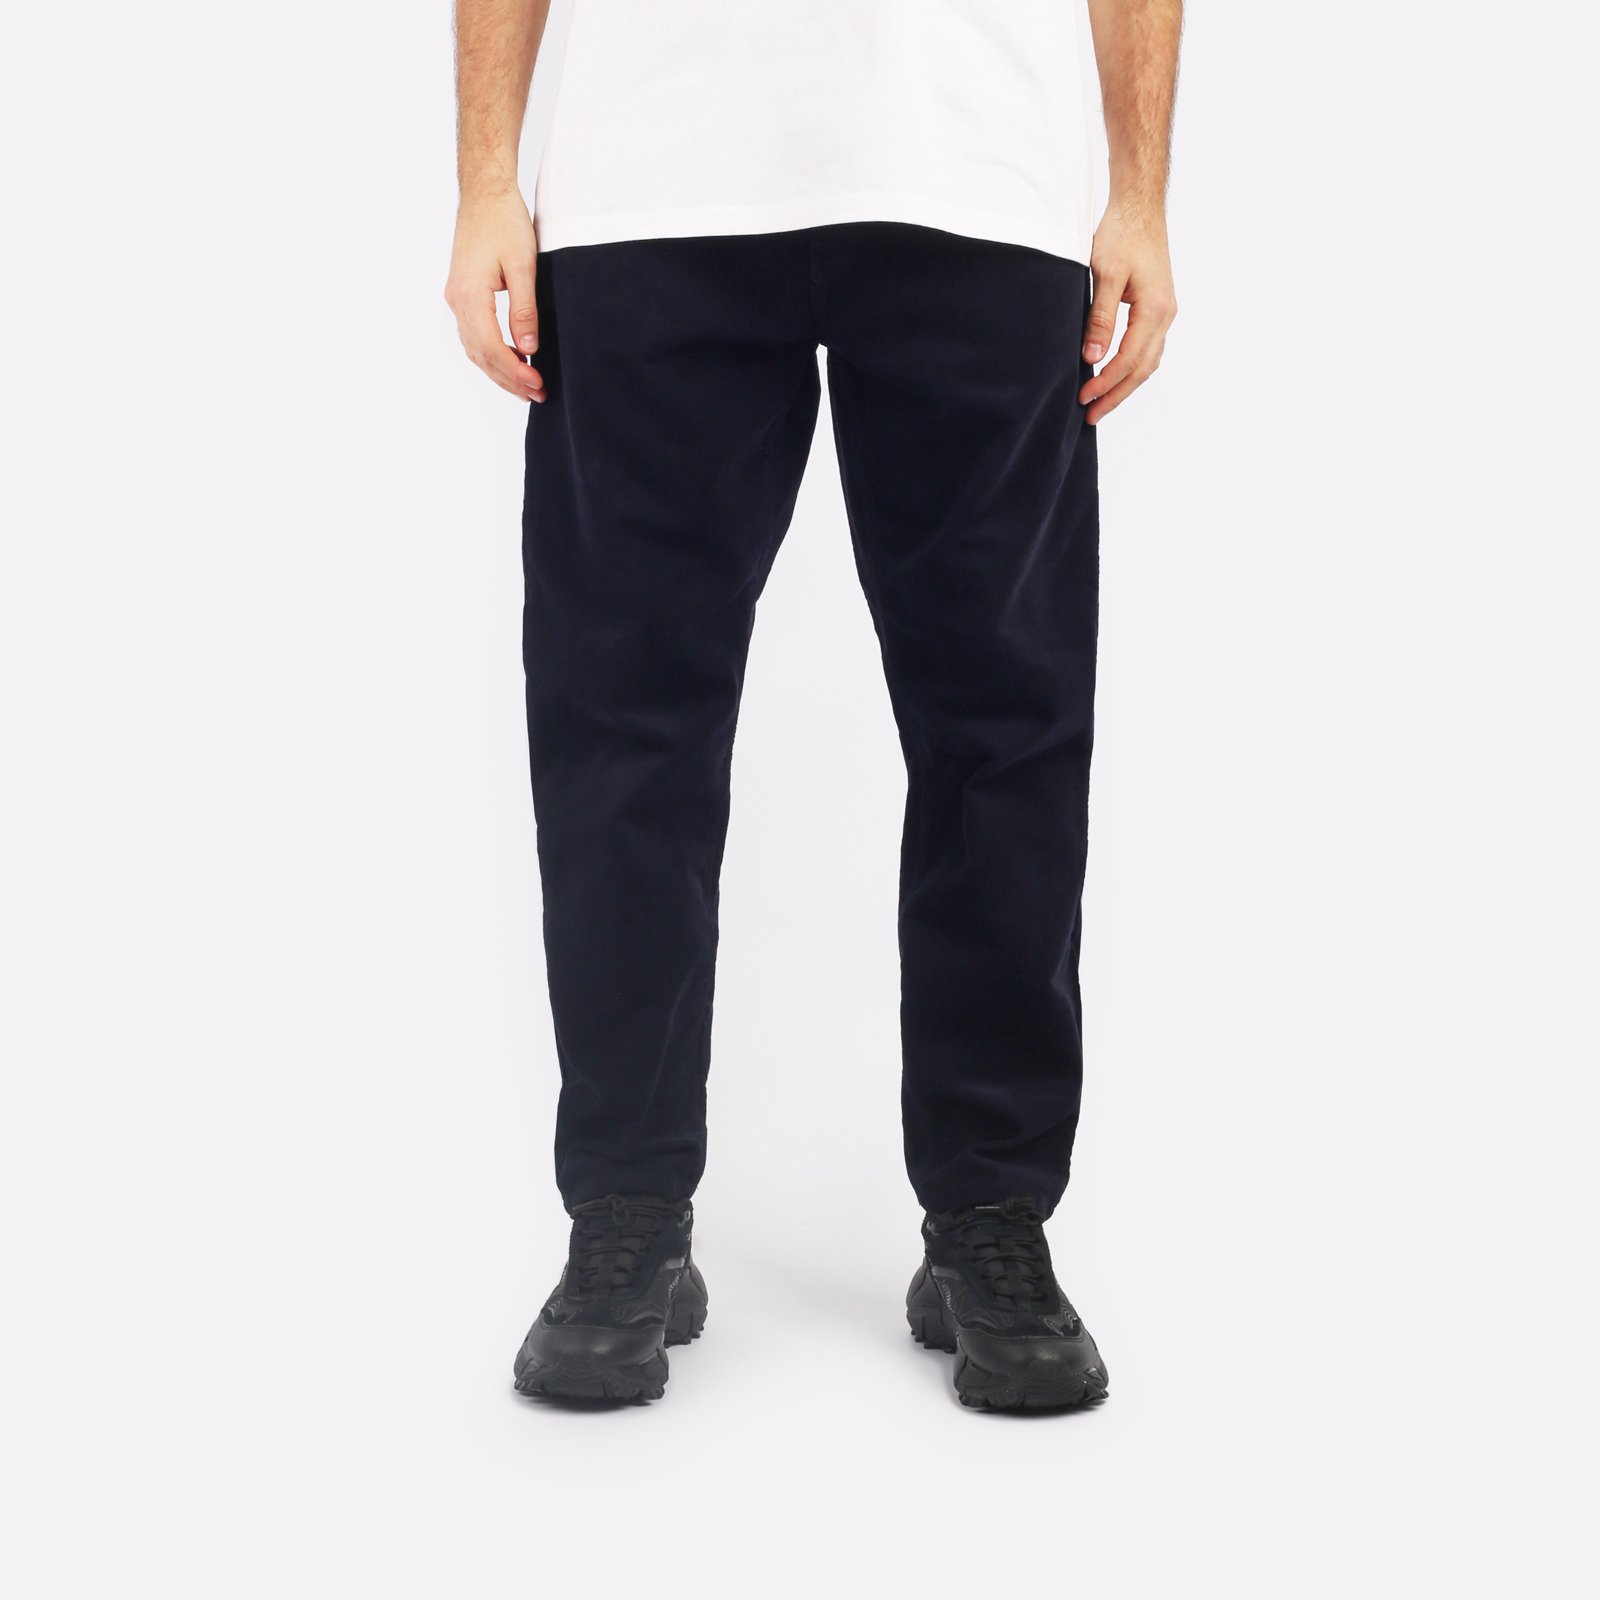 мужские синие брюки Carhartt WIP Newel Pant I031456-dark_navy - цена, описание, фото 1